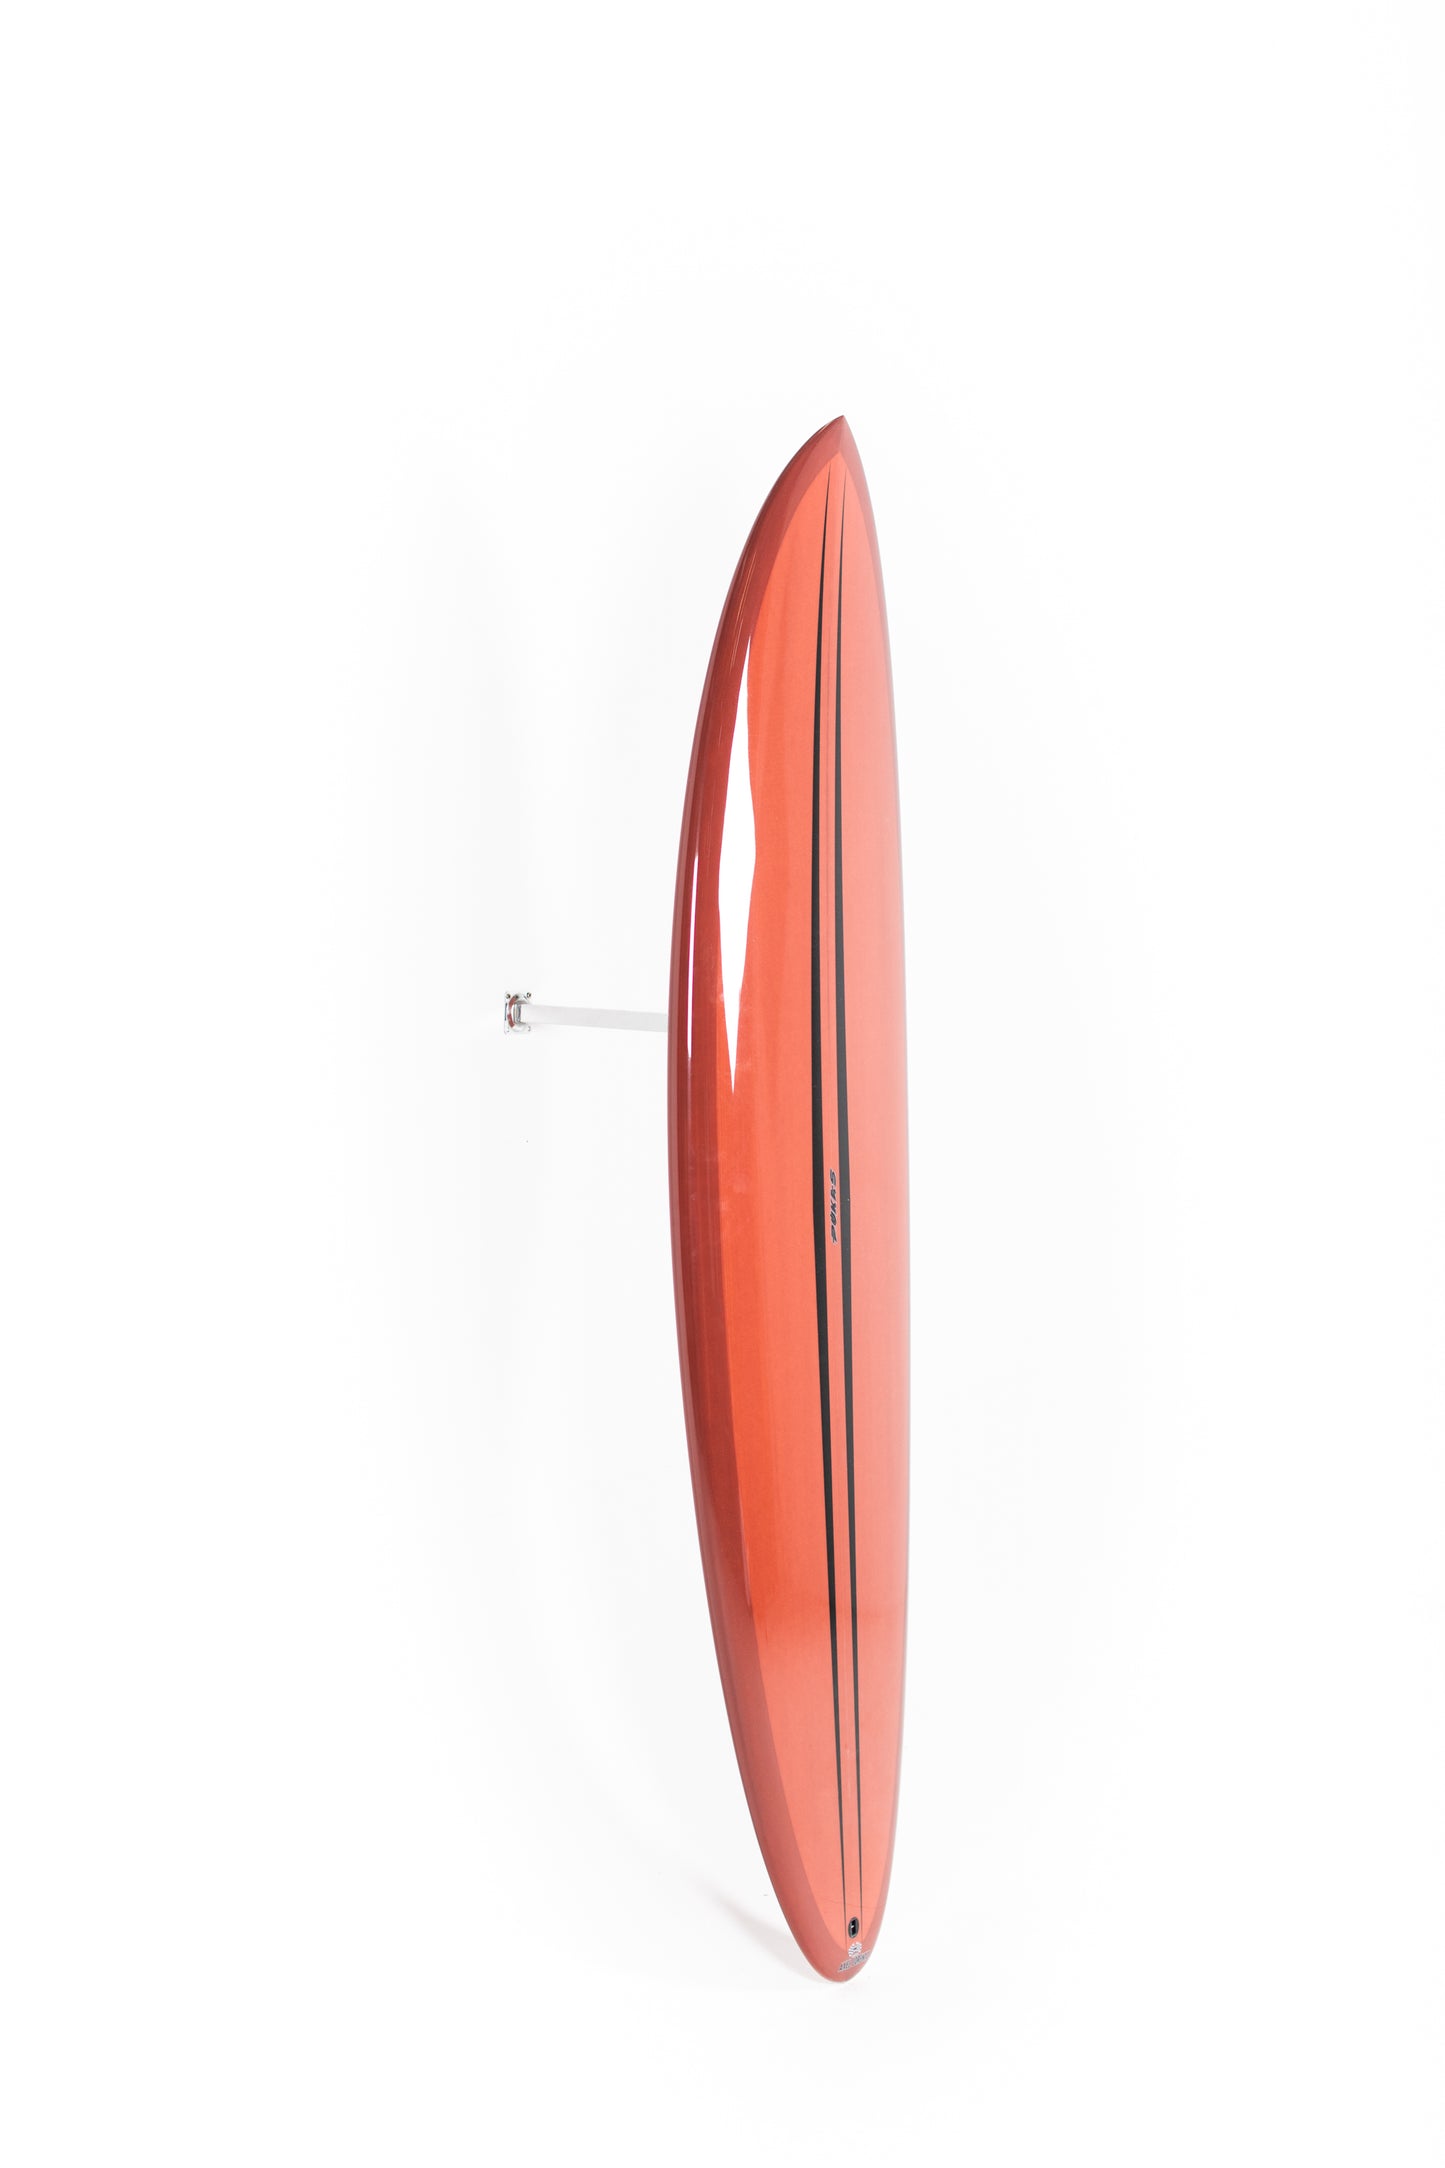 
                  
                    Pukas Surf Shop - Pukas Surfboard - LA CÔTE by Axel Lorentz - 6´8" x 21,25 x 2,88 - 44,43L -  AX09630
                  
                